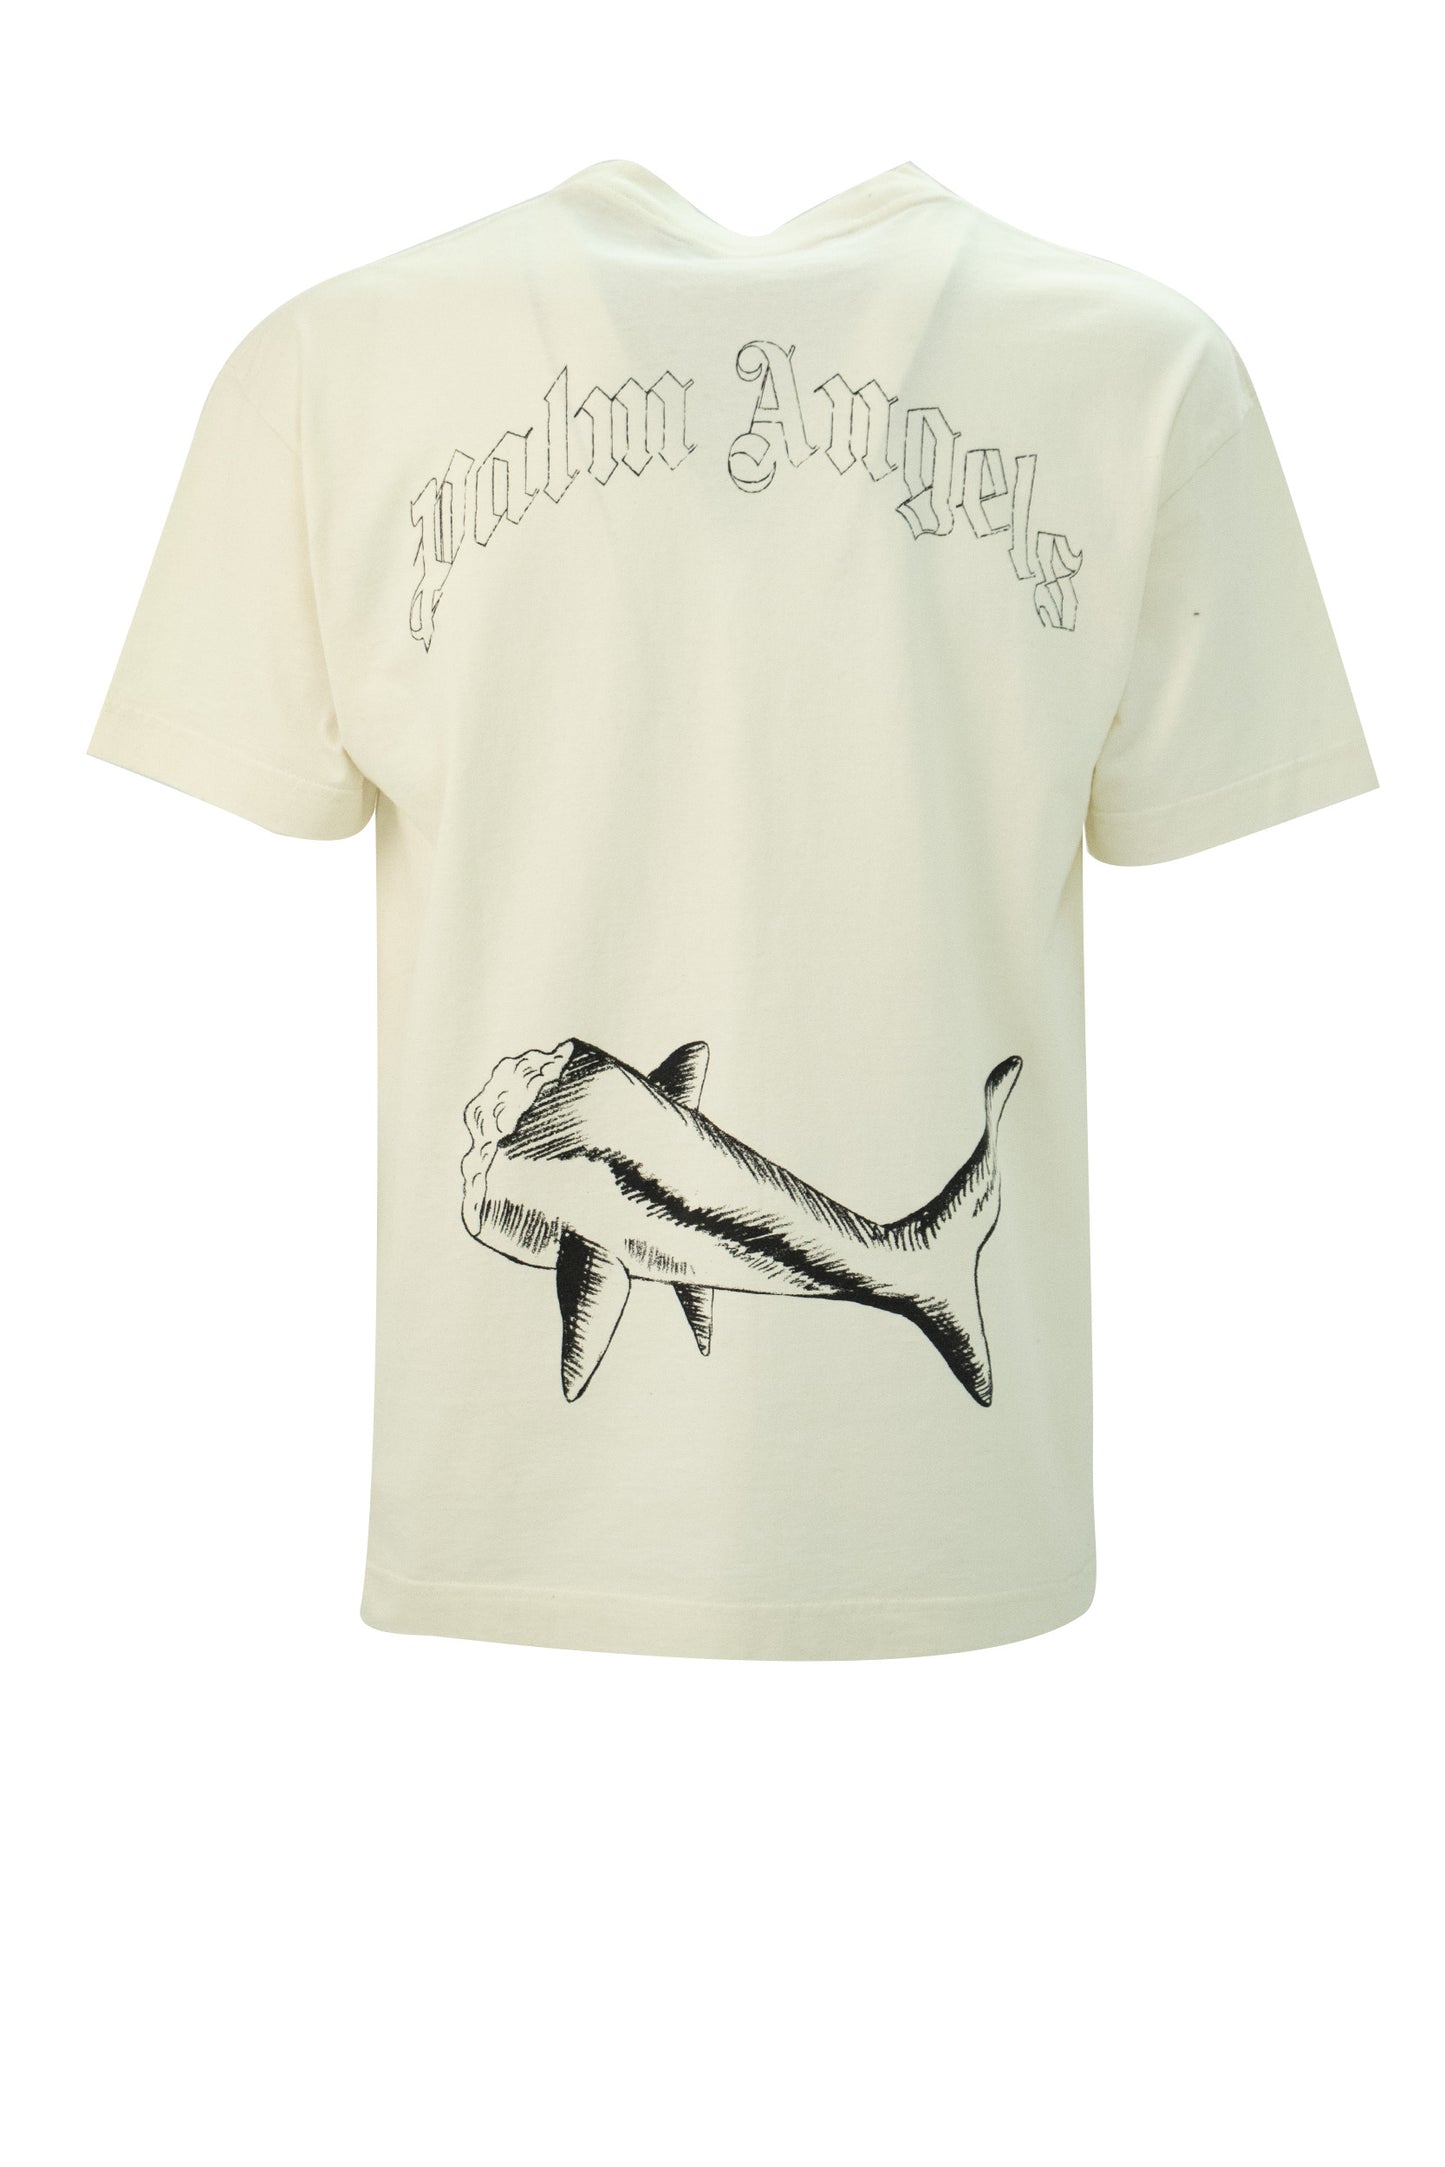 Palm Angels Broken Shark T-shirt